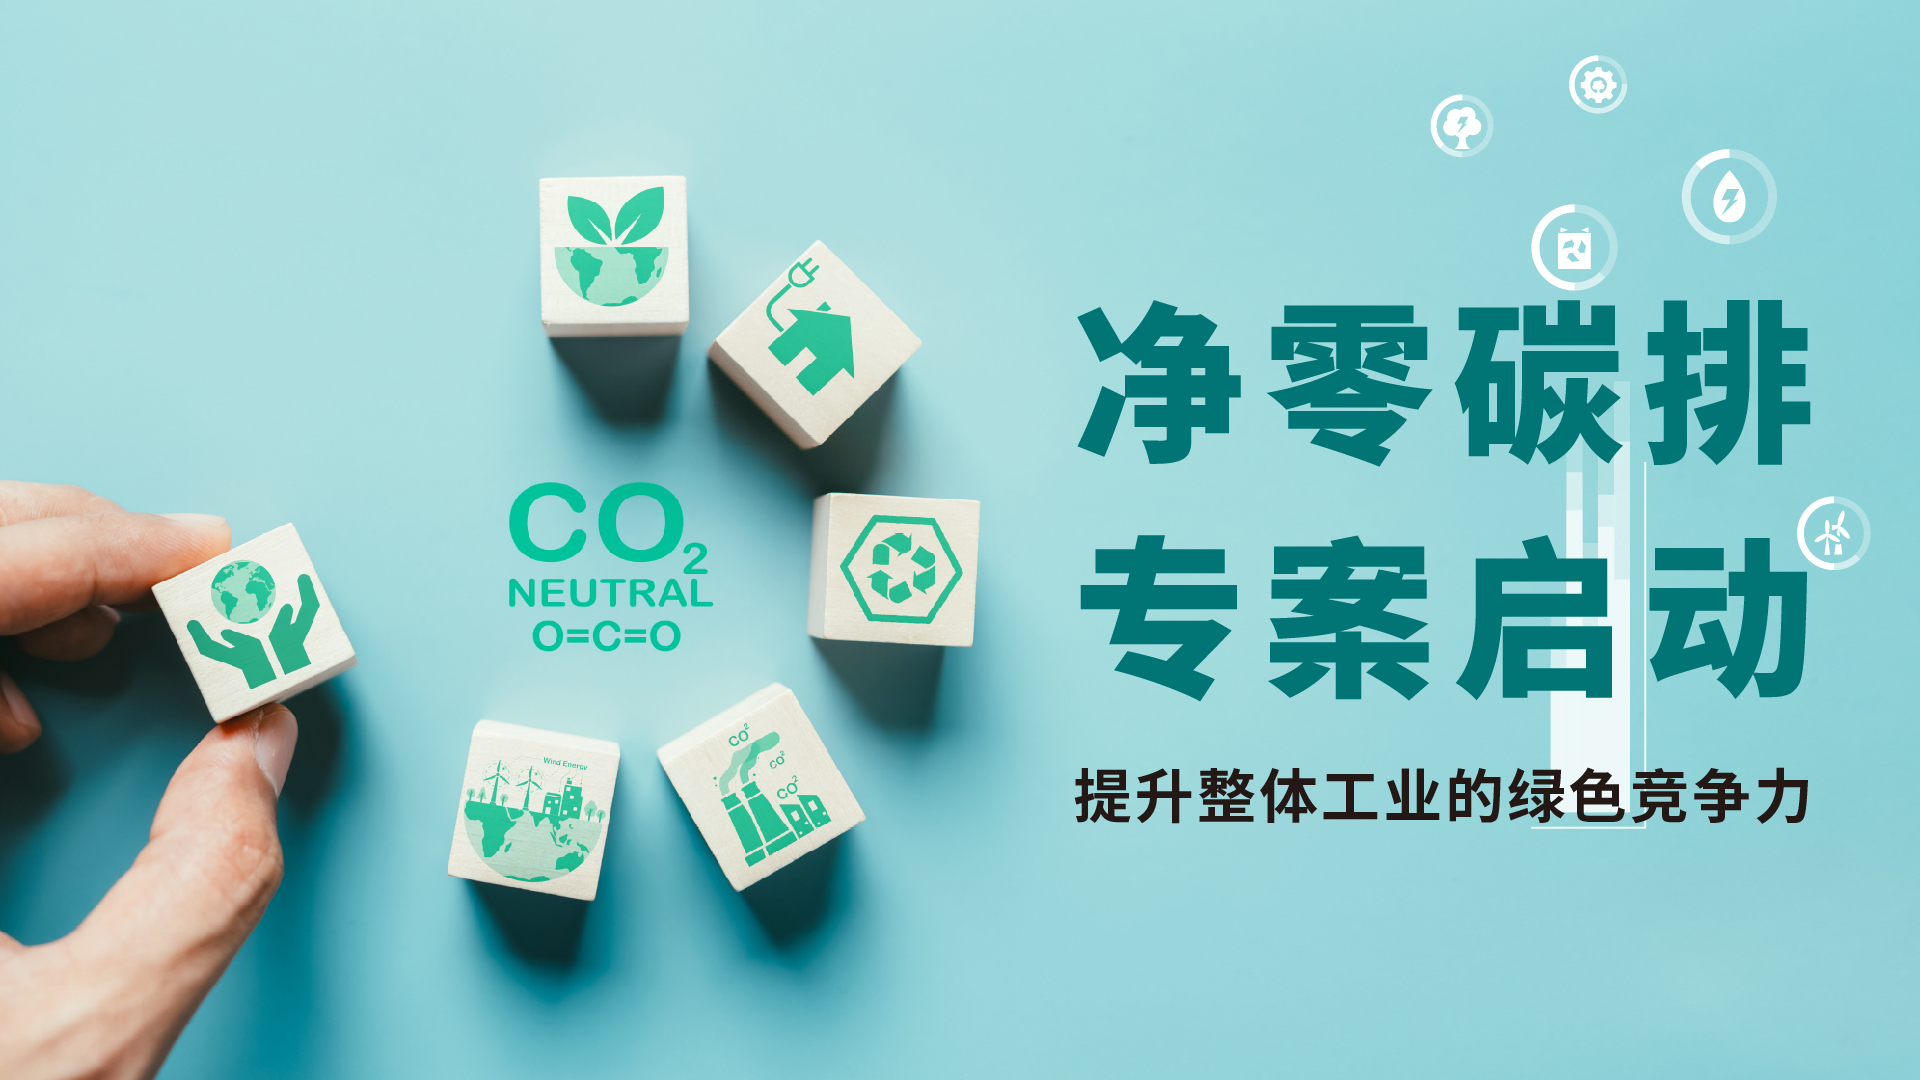 睿华国际「净零碳排」 项目计划顾问团队启动